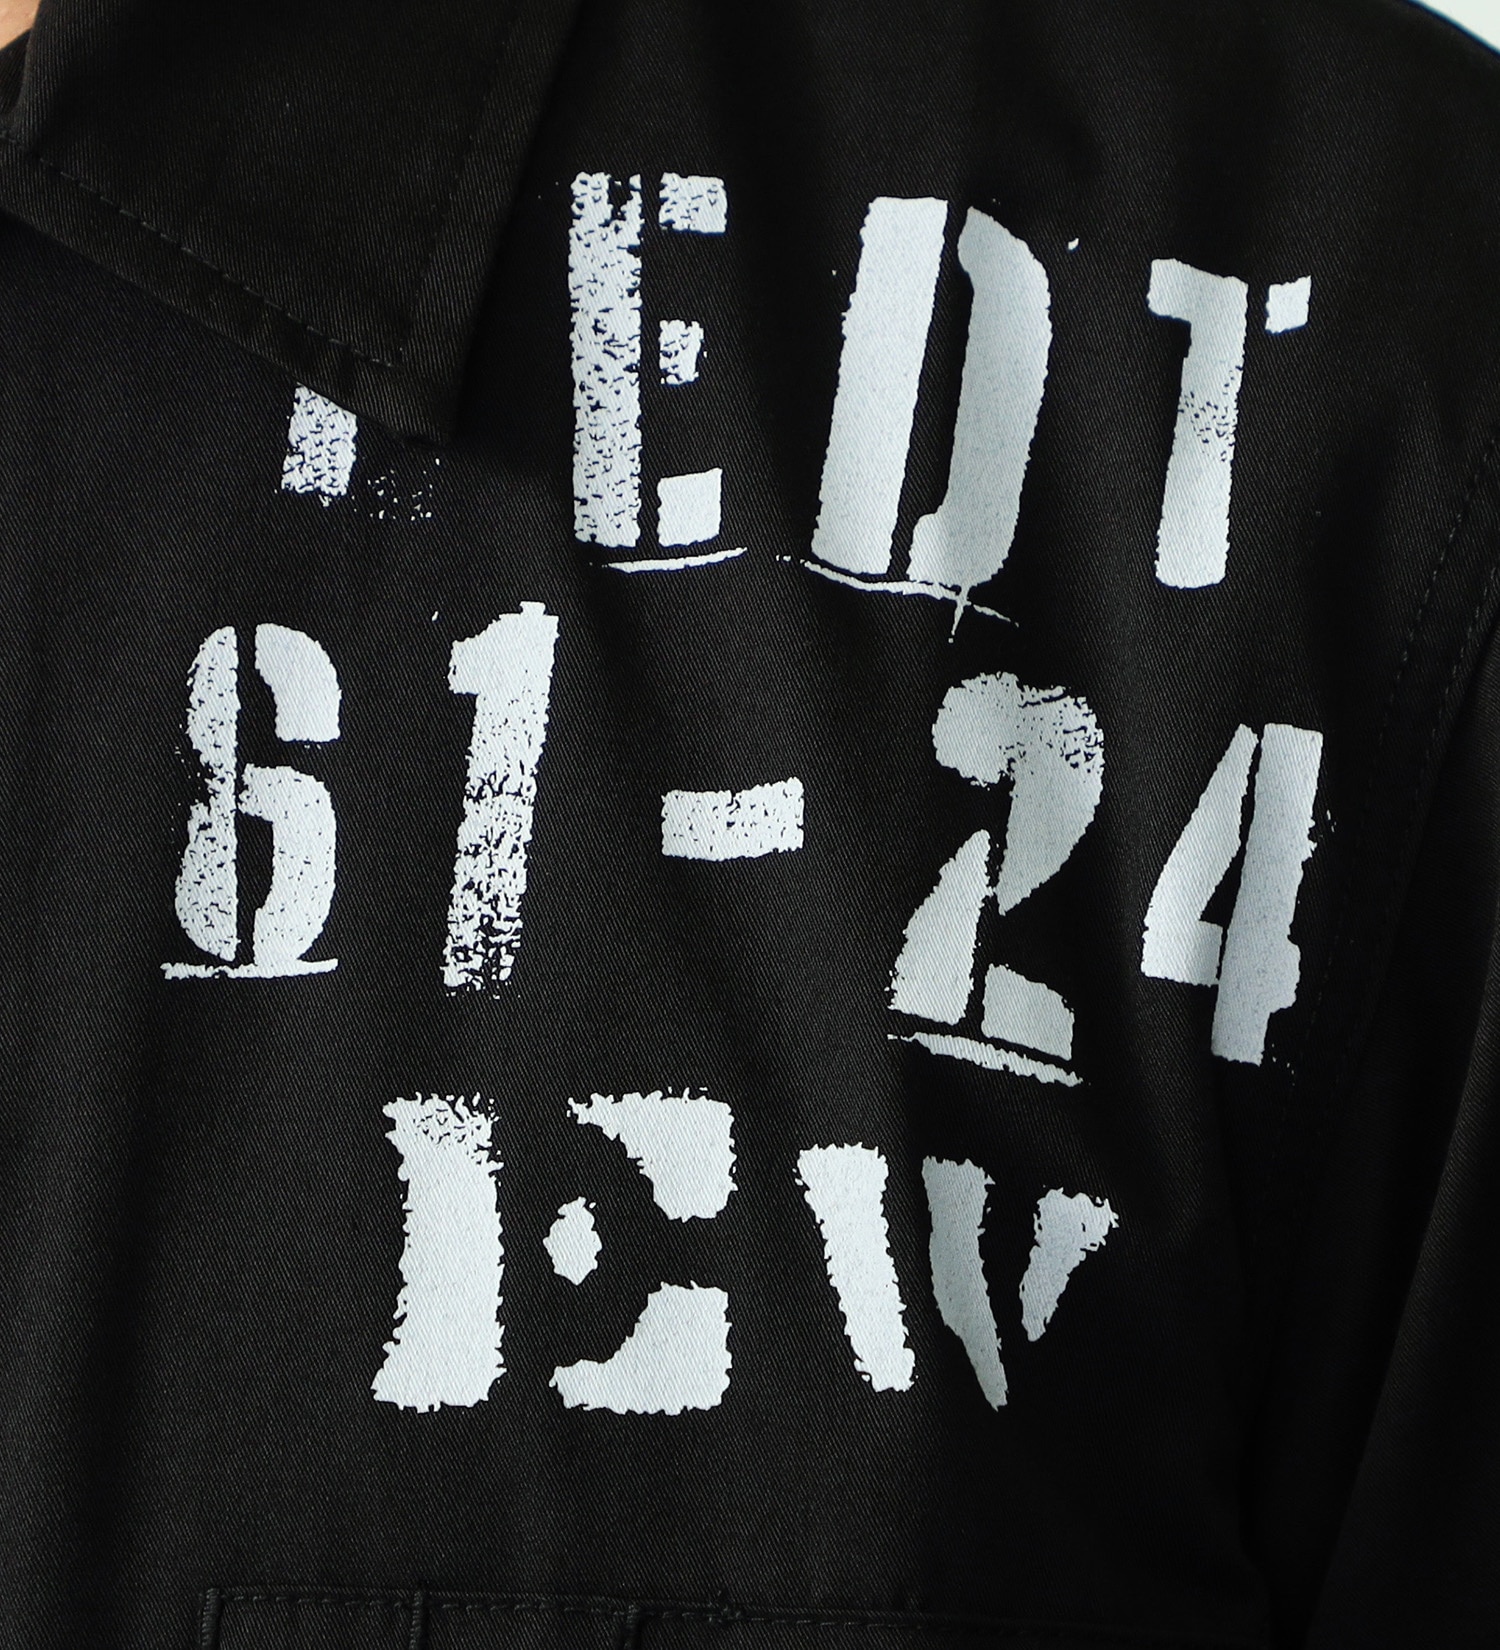 EDWIN(エドウイン)のミリタリーシャツ【アウトレット店舗・WEB限定】|トップス/シャツ/ブラウス/メンズ|ブラック